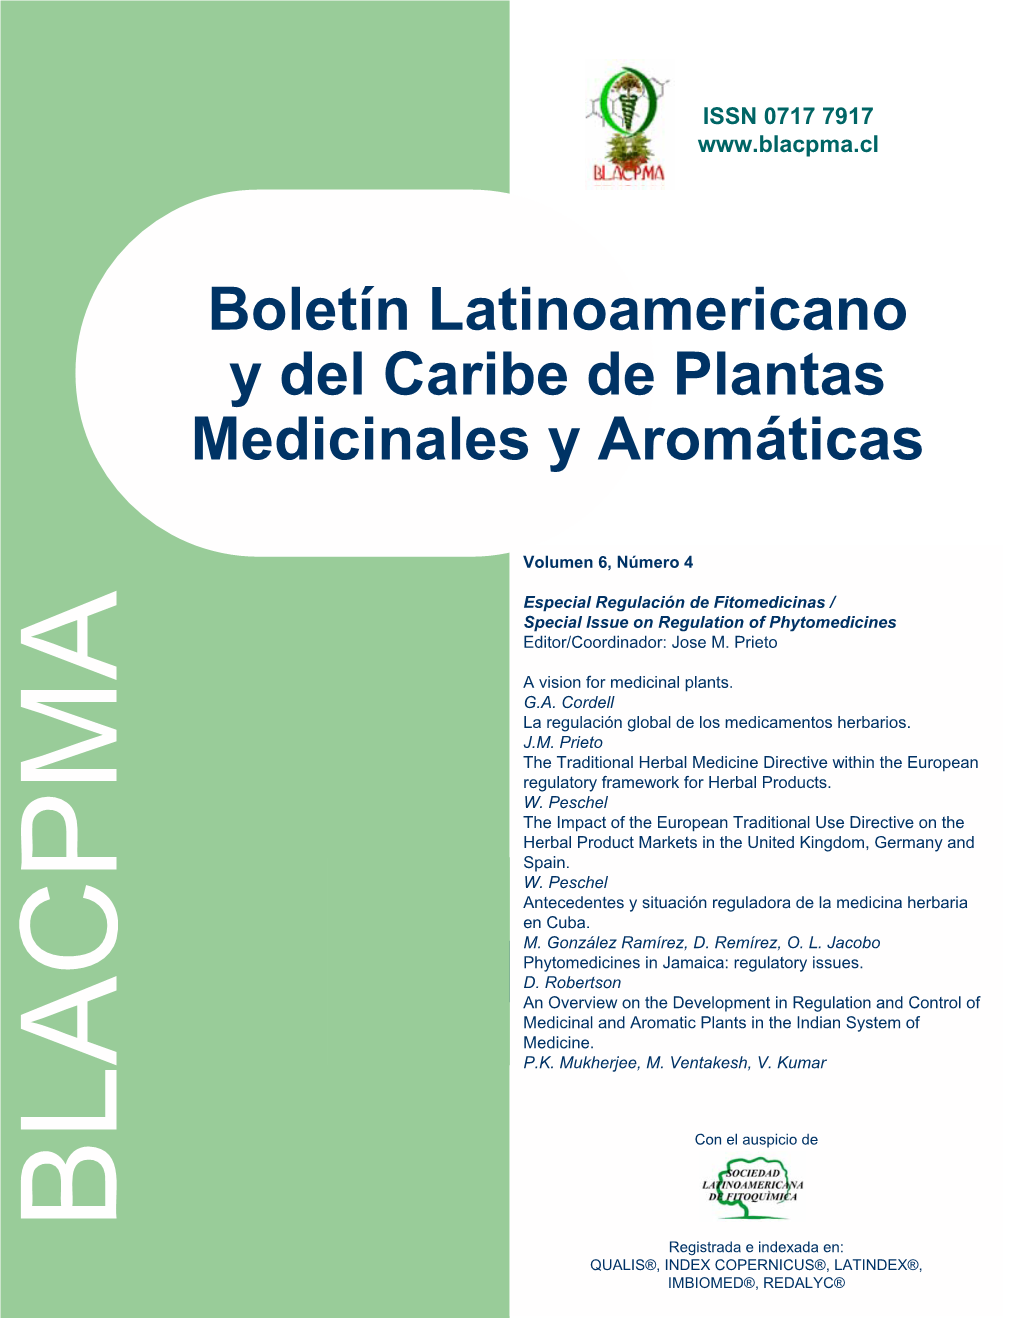 Boletín Latinoamericano Y Del Caribe De Plantas Medicinales Y Aromáticas